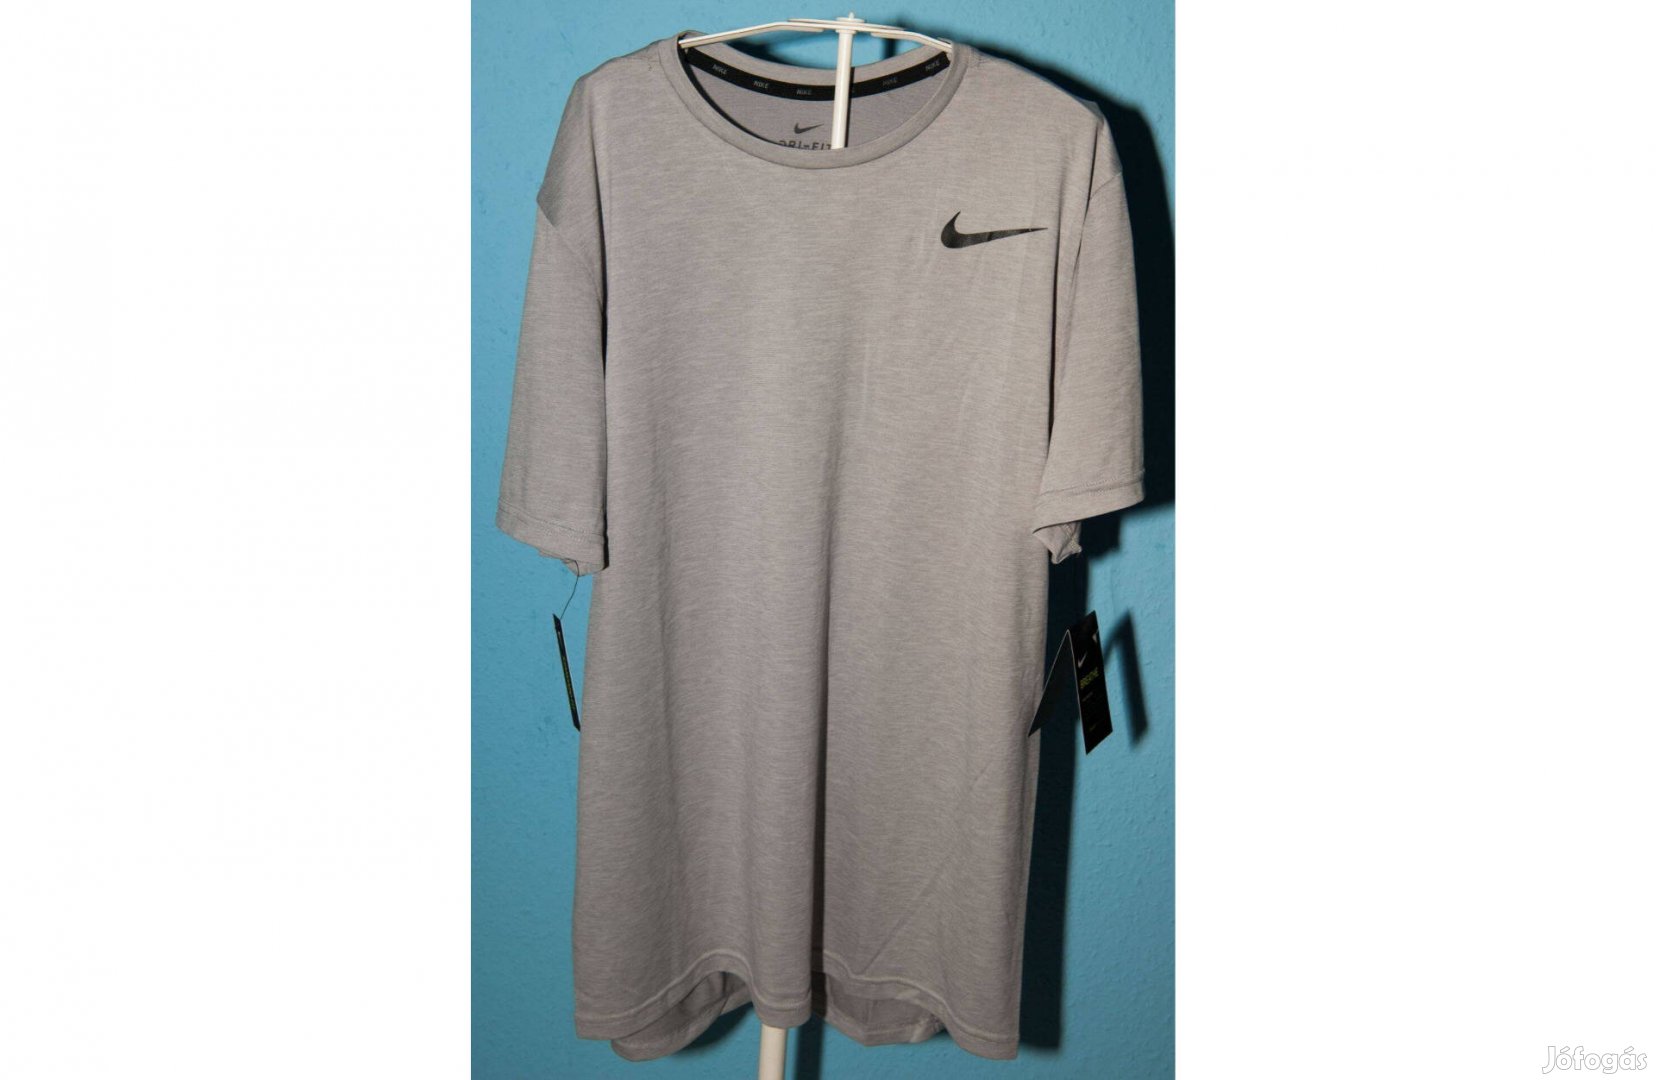 Nike szürke, új, címkés fitness, edző póló (L-es)